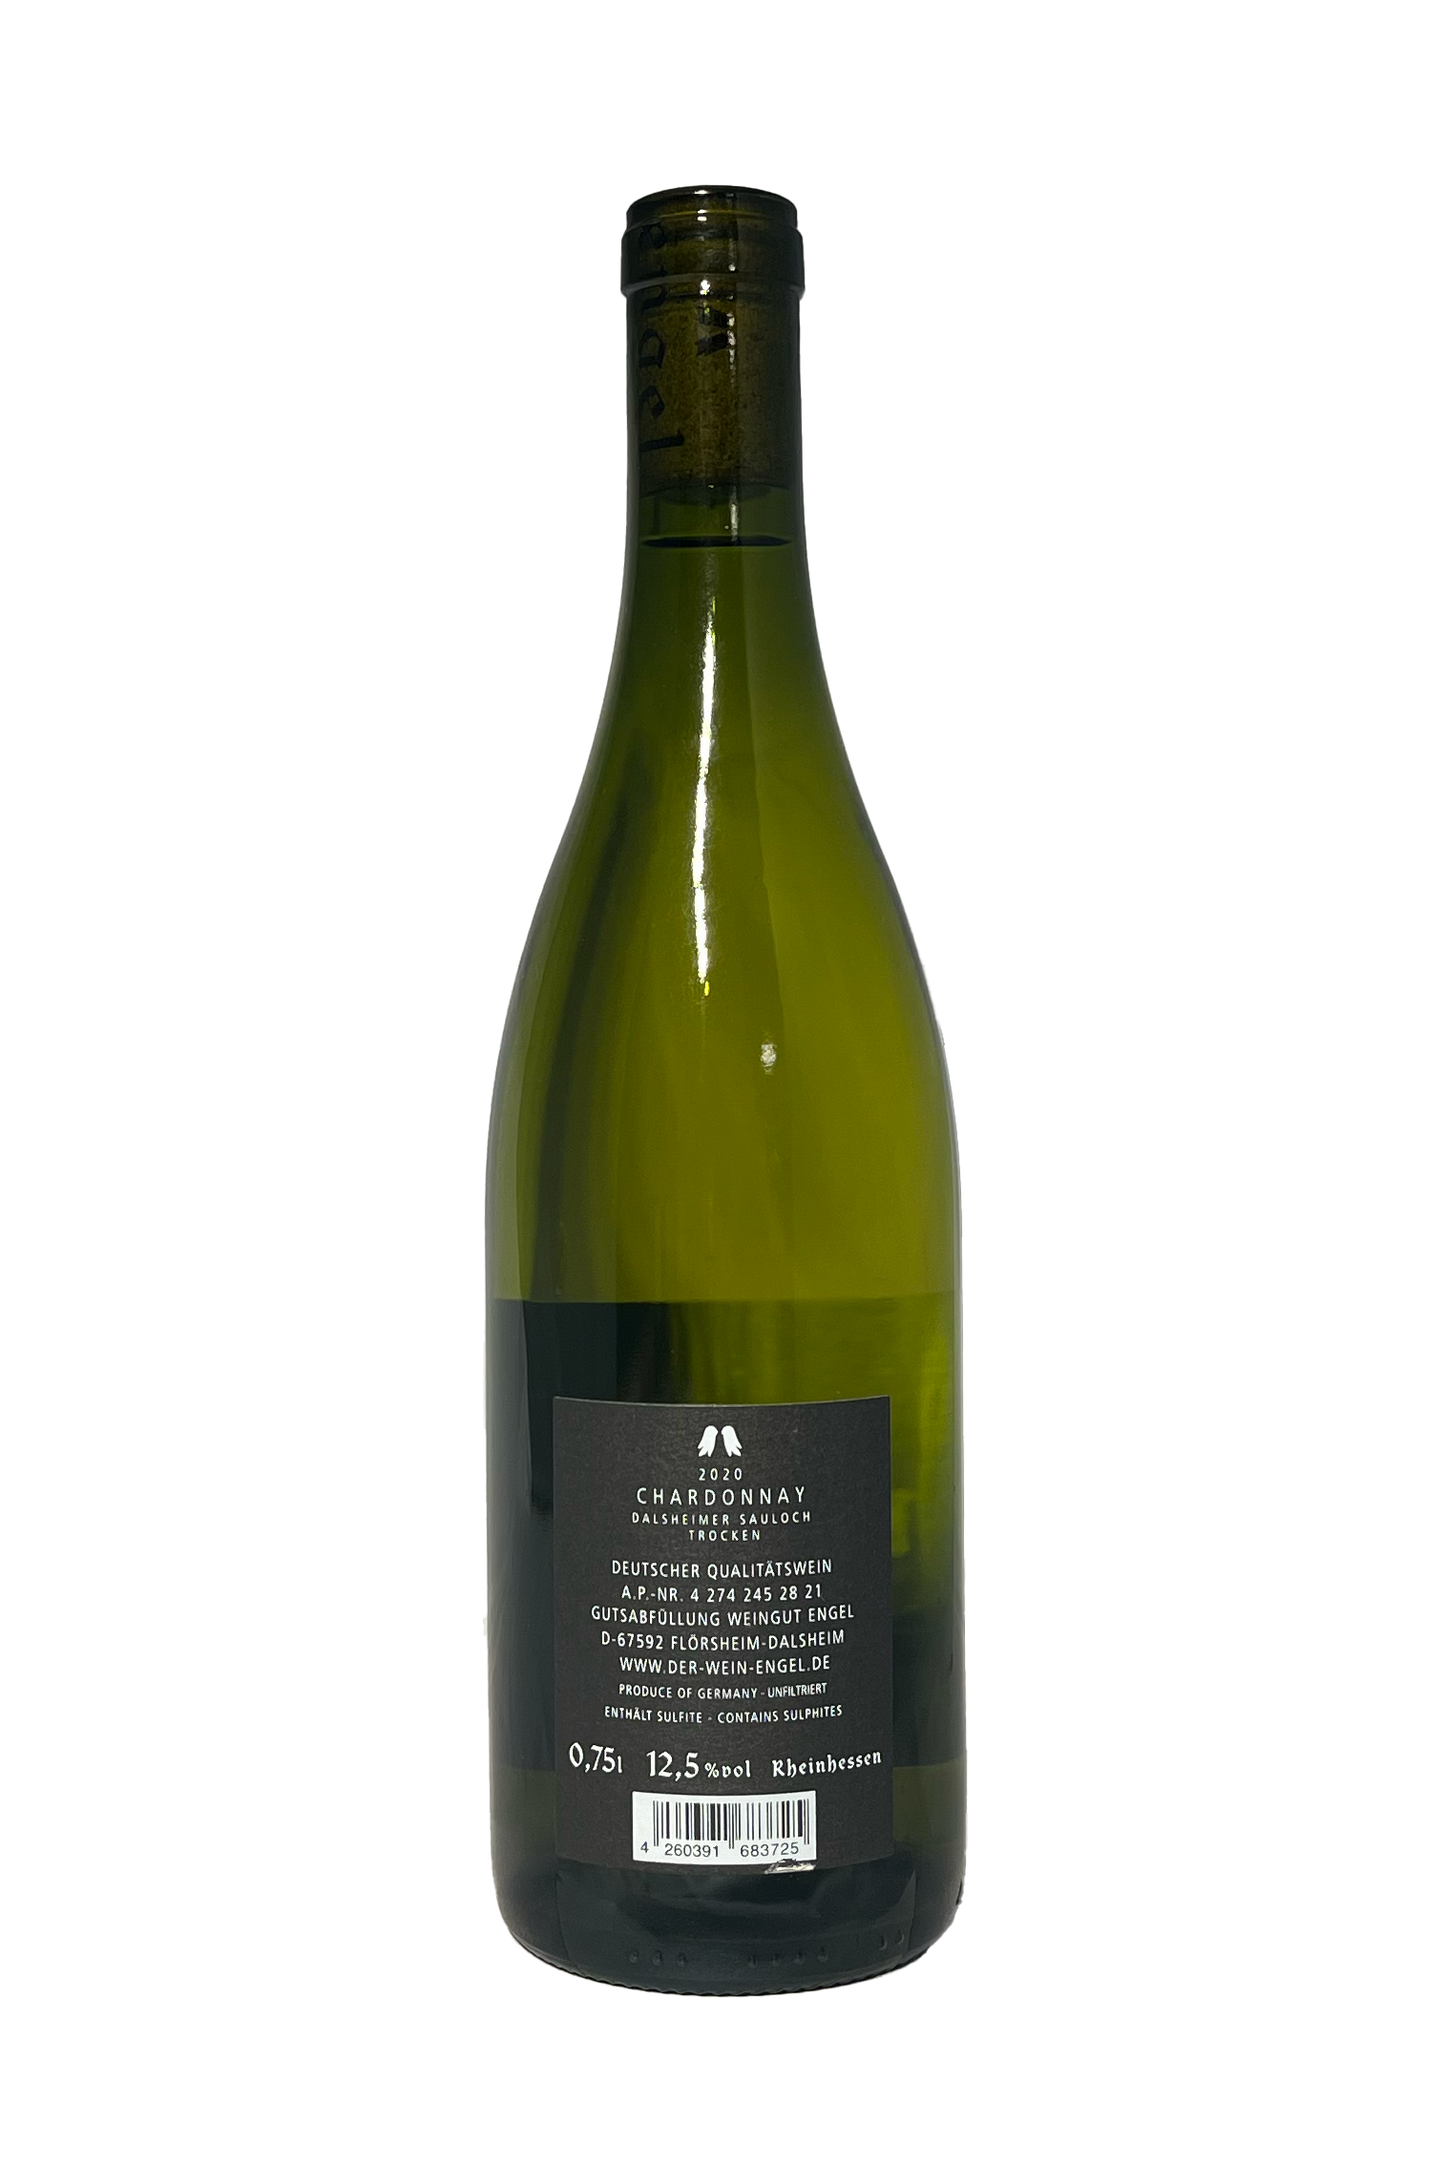 Weingut Engel Chardonnay Sauloch 2020